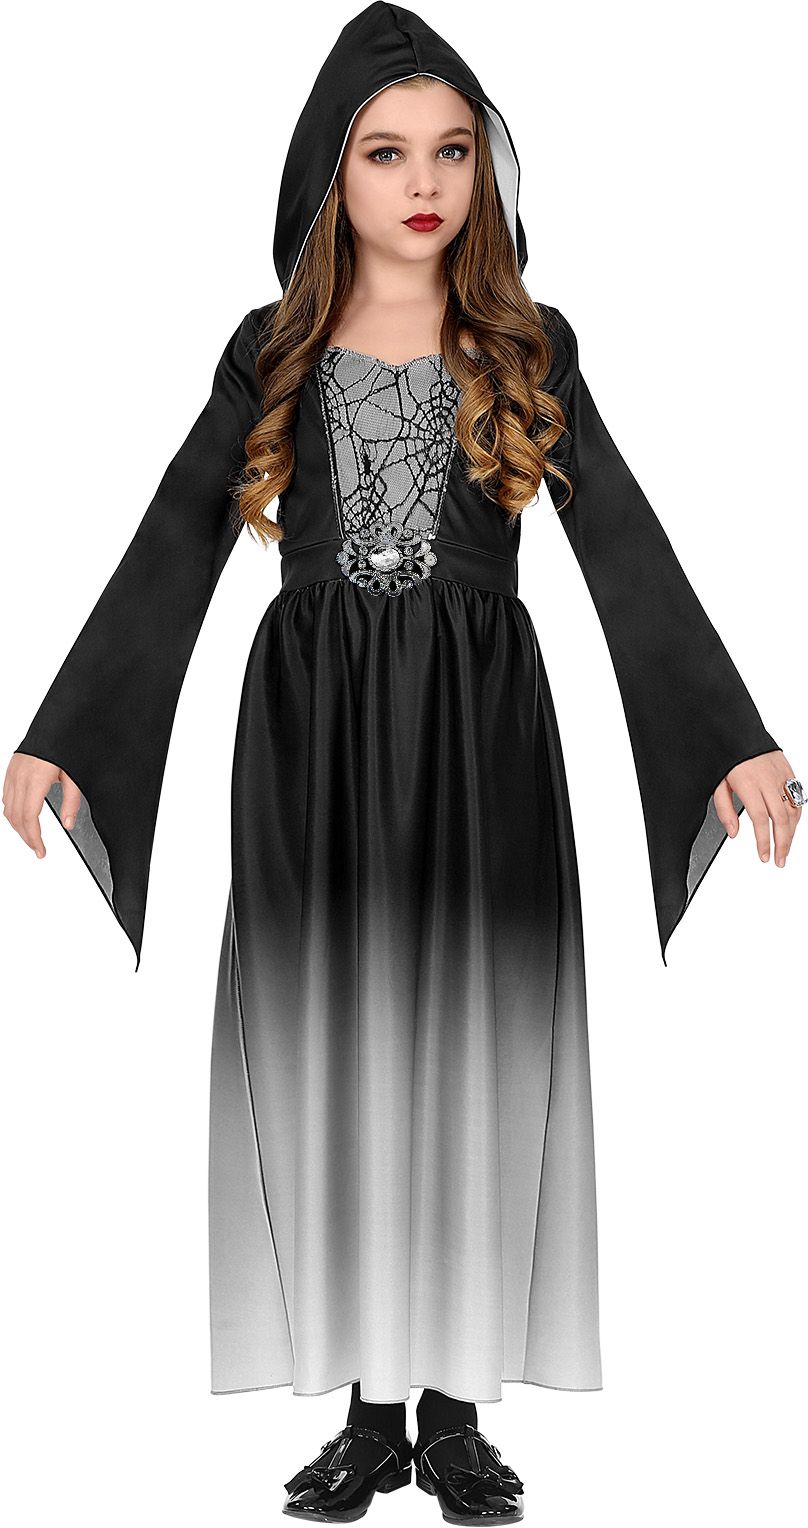 Gothic jurk meisje Halloween